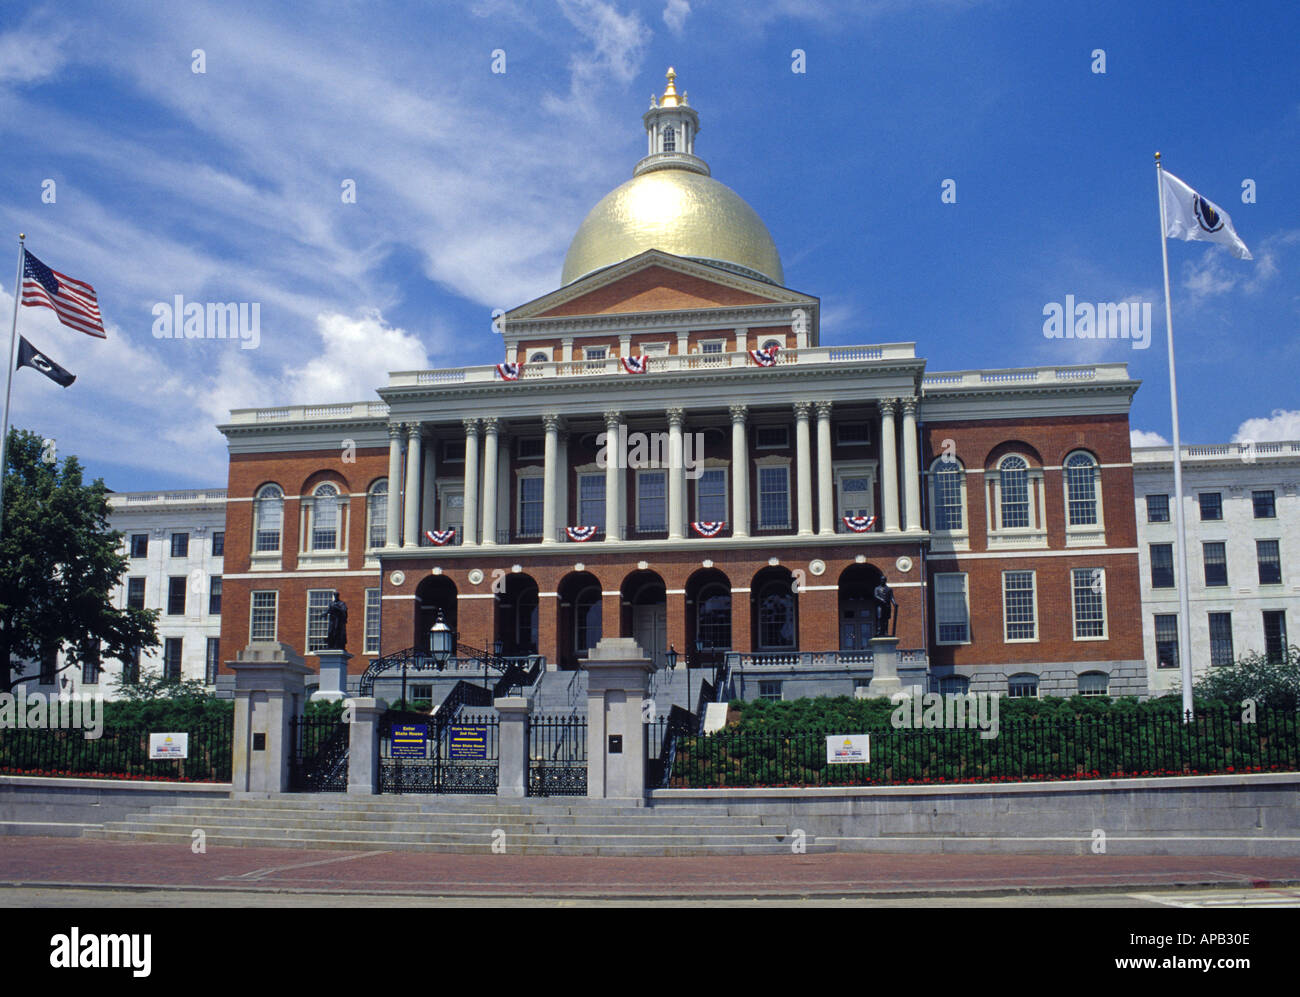 The Massachusetts Statehouse on Beacon Hill in Boston Stock Photo